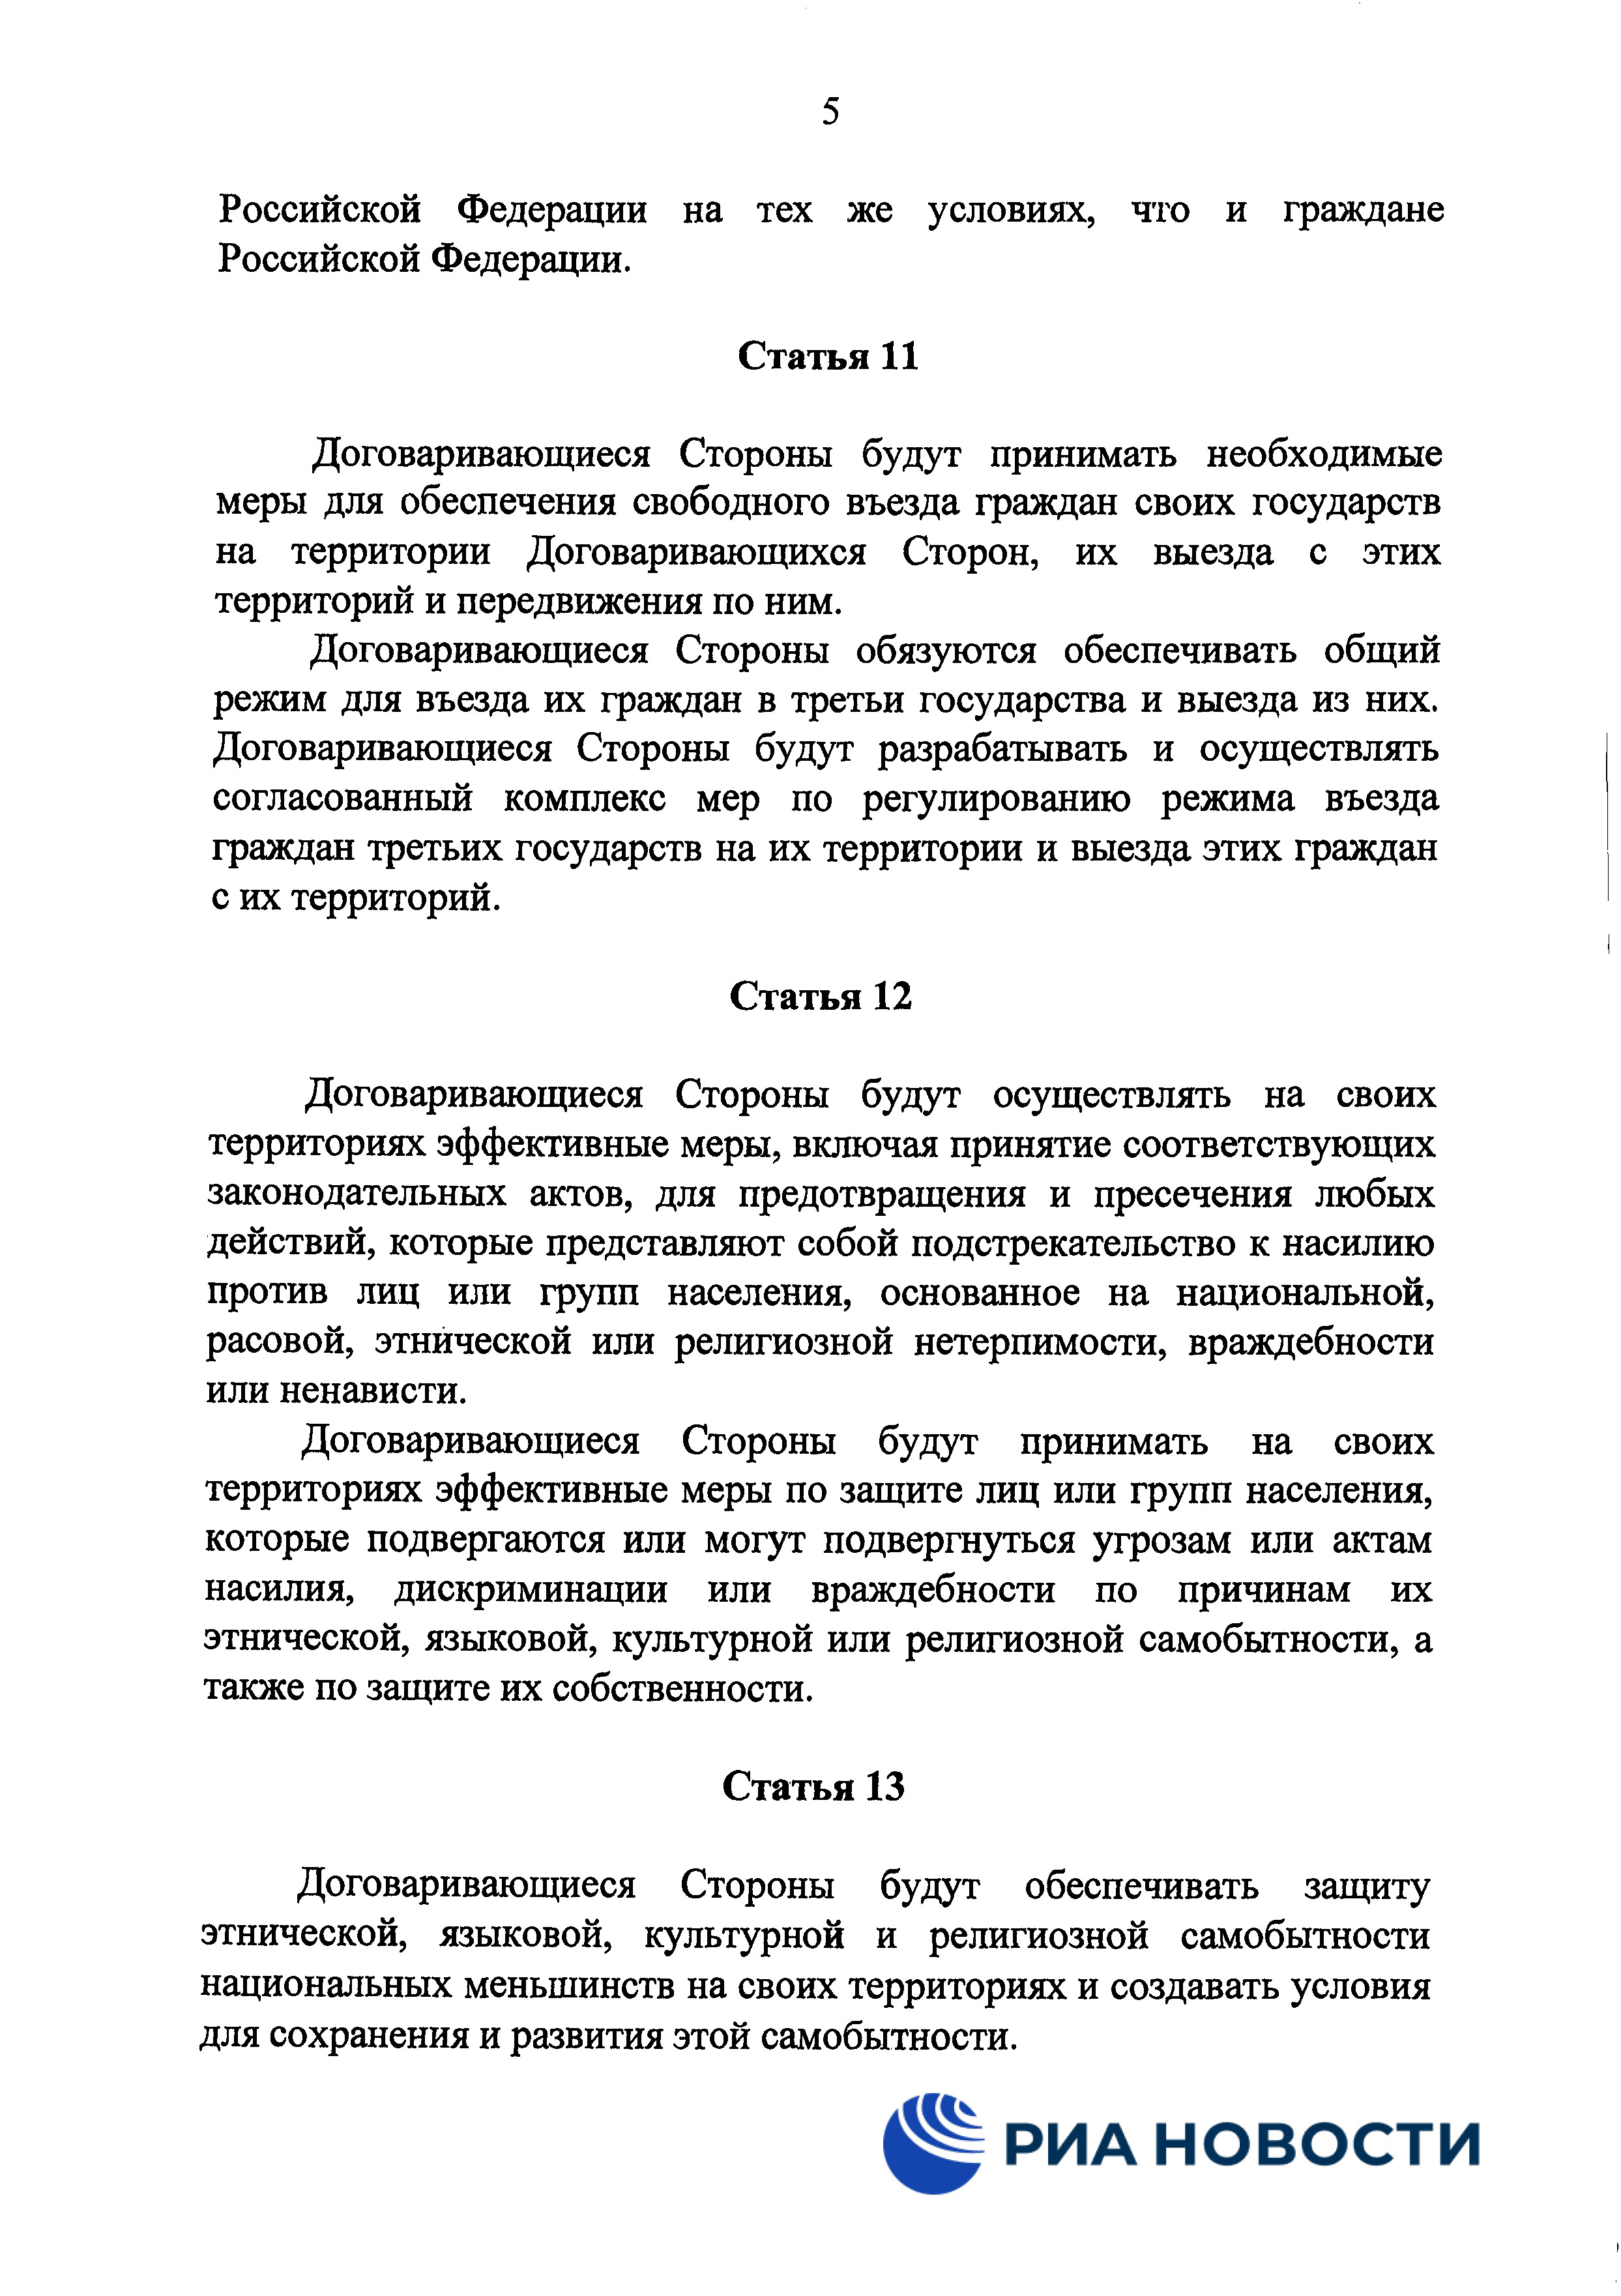 Договор о дружбе России с ДНР и ЛНР - страница 8